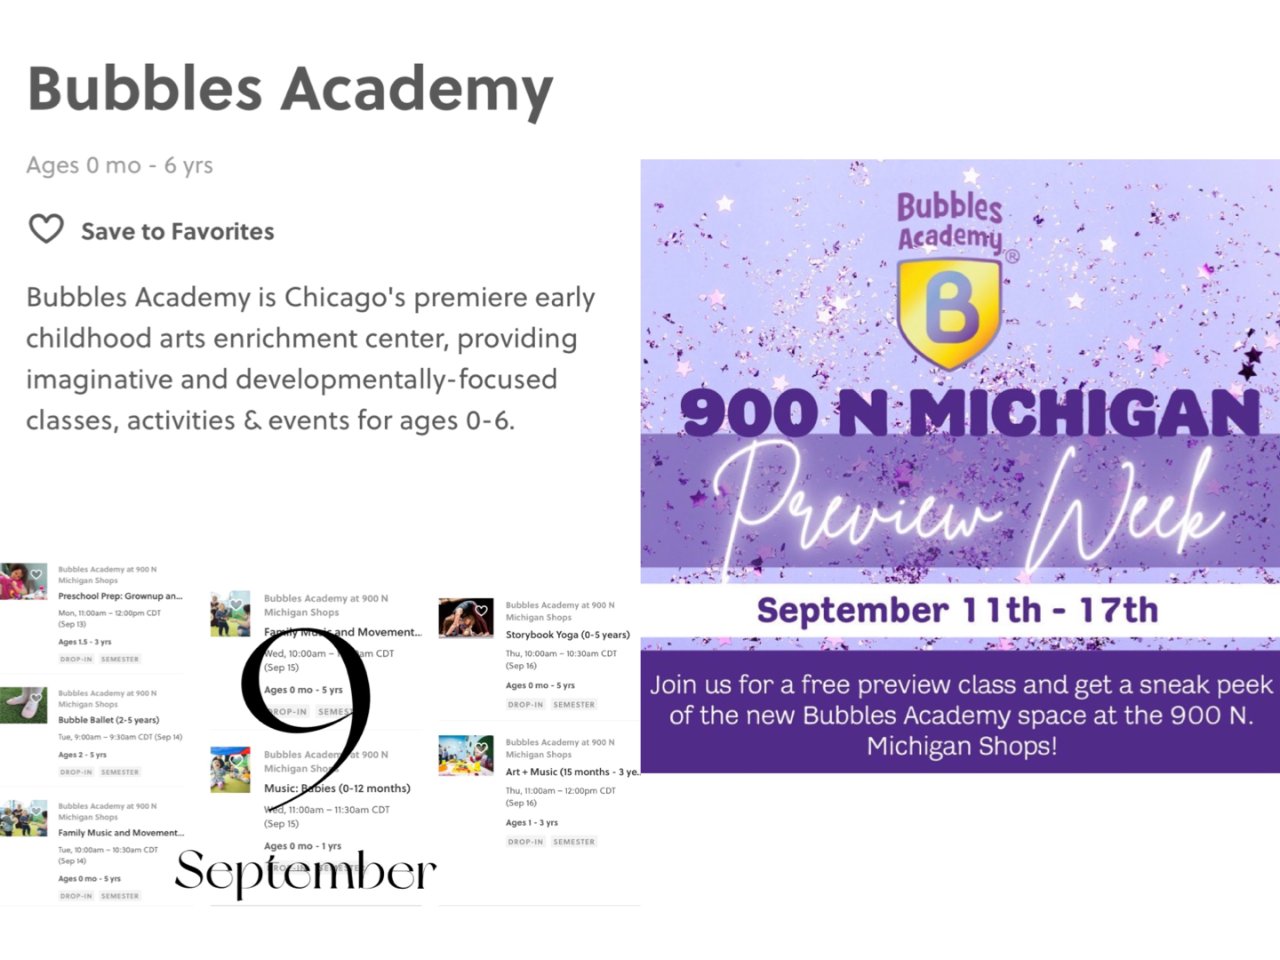 芝加哥Bubbles Academy免费...